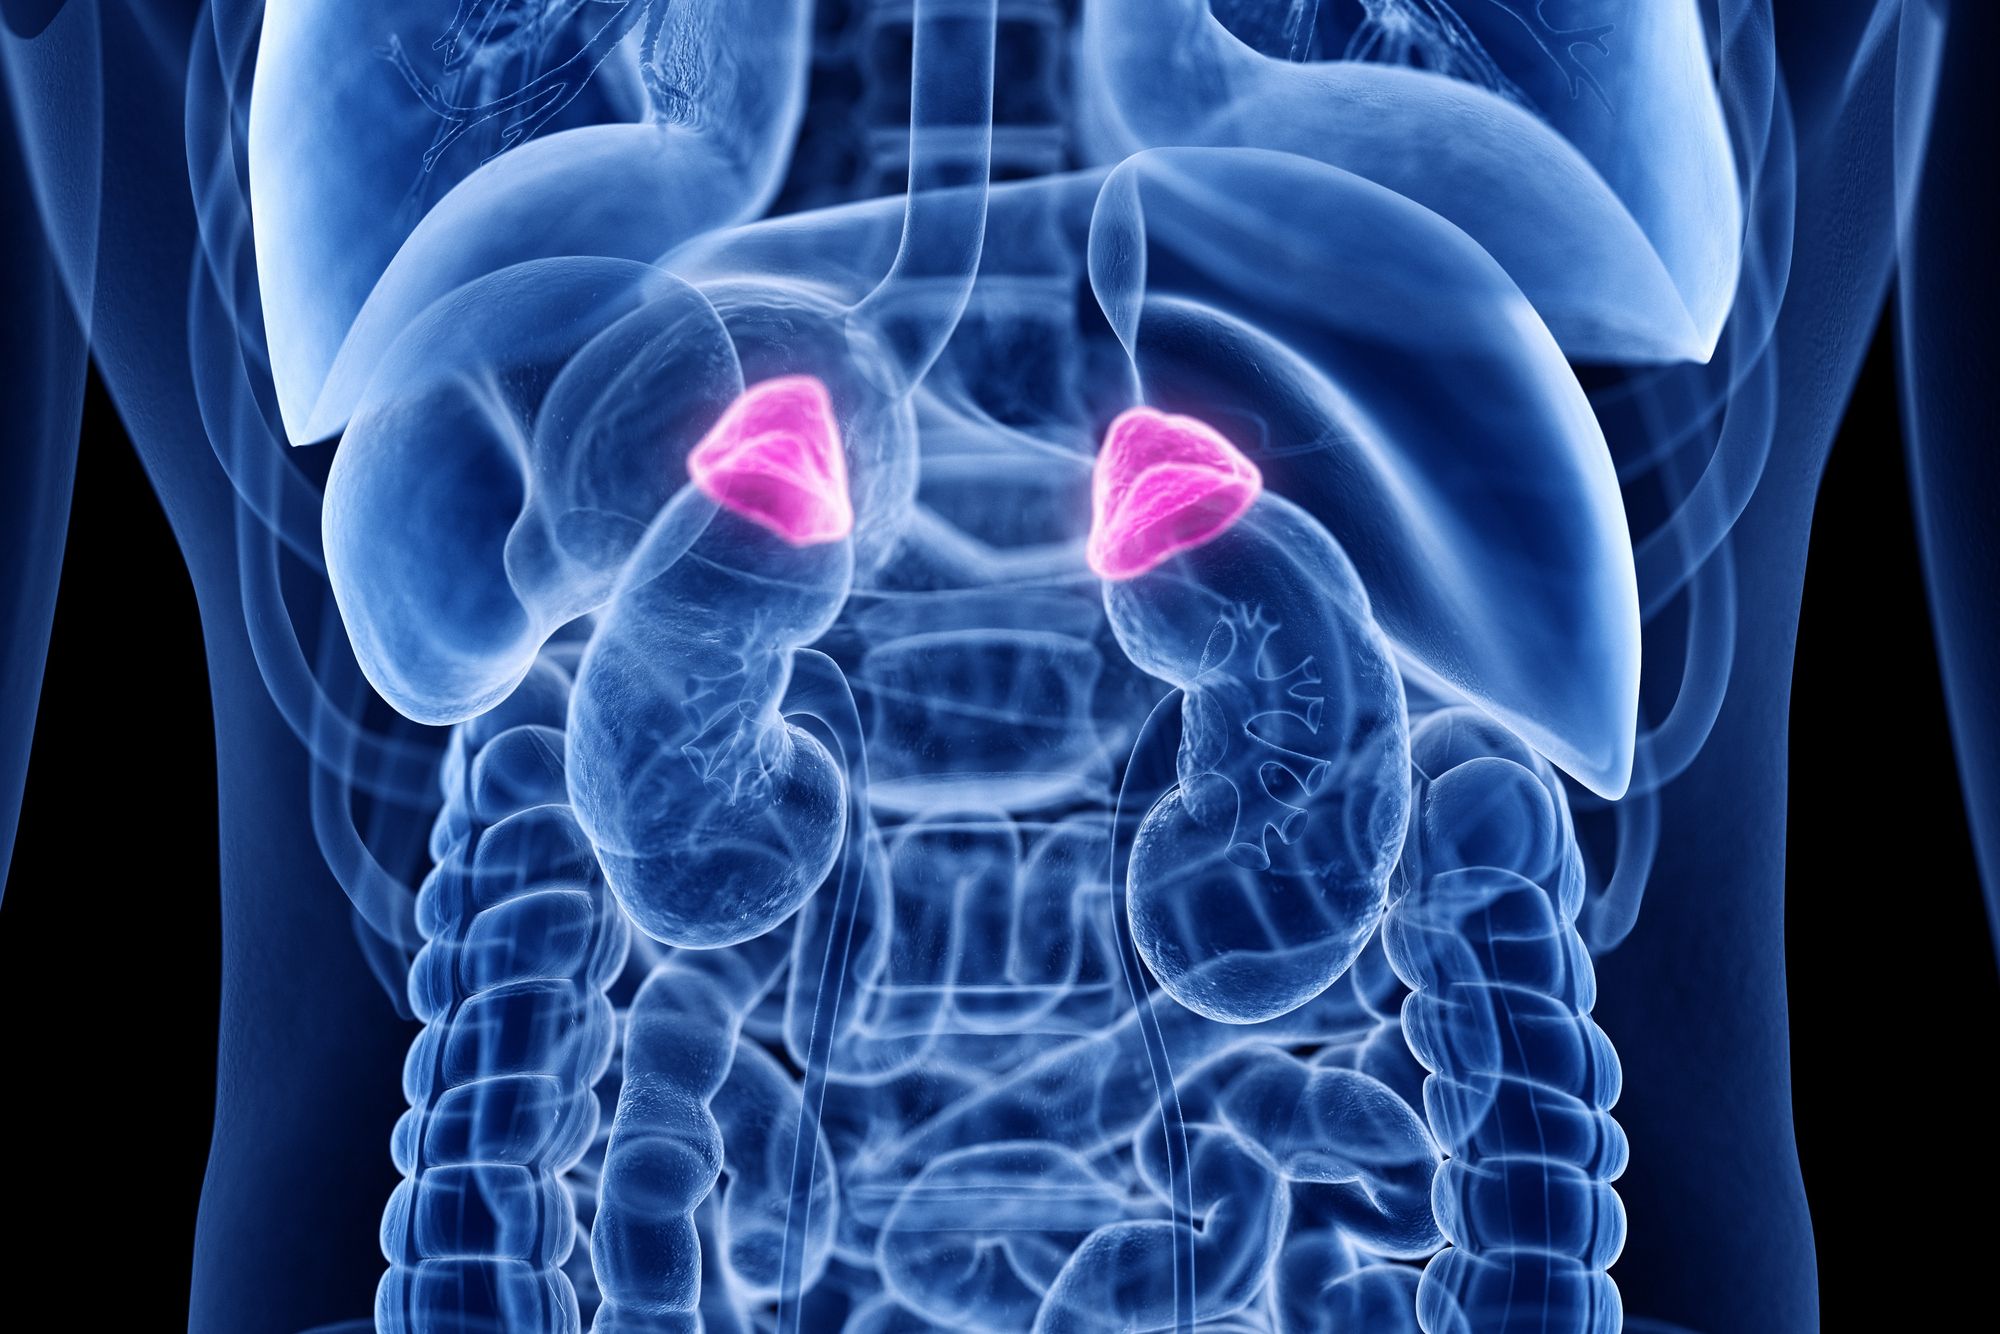 ilustração de região abdominal do corpo com destaque em rosa para a área acima dos rins - Metrópoles